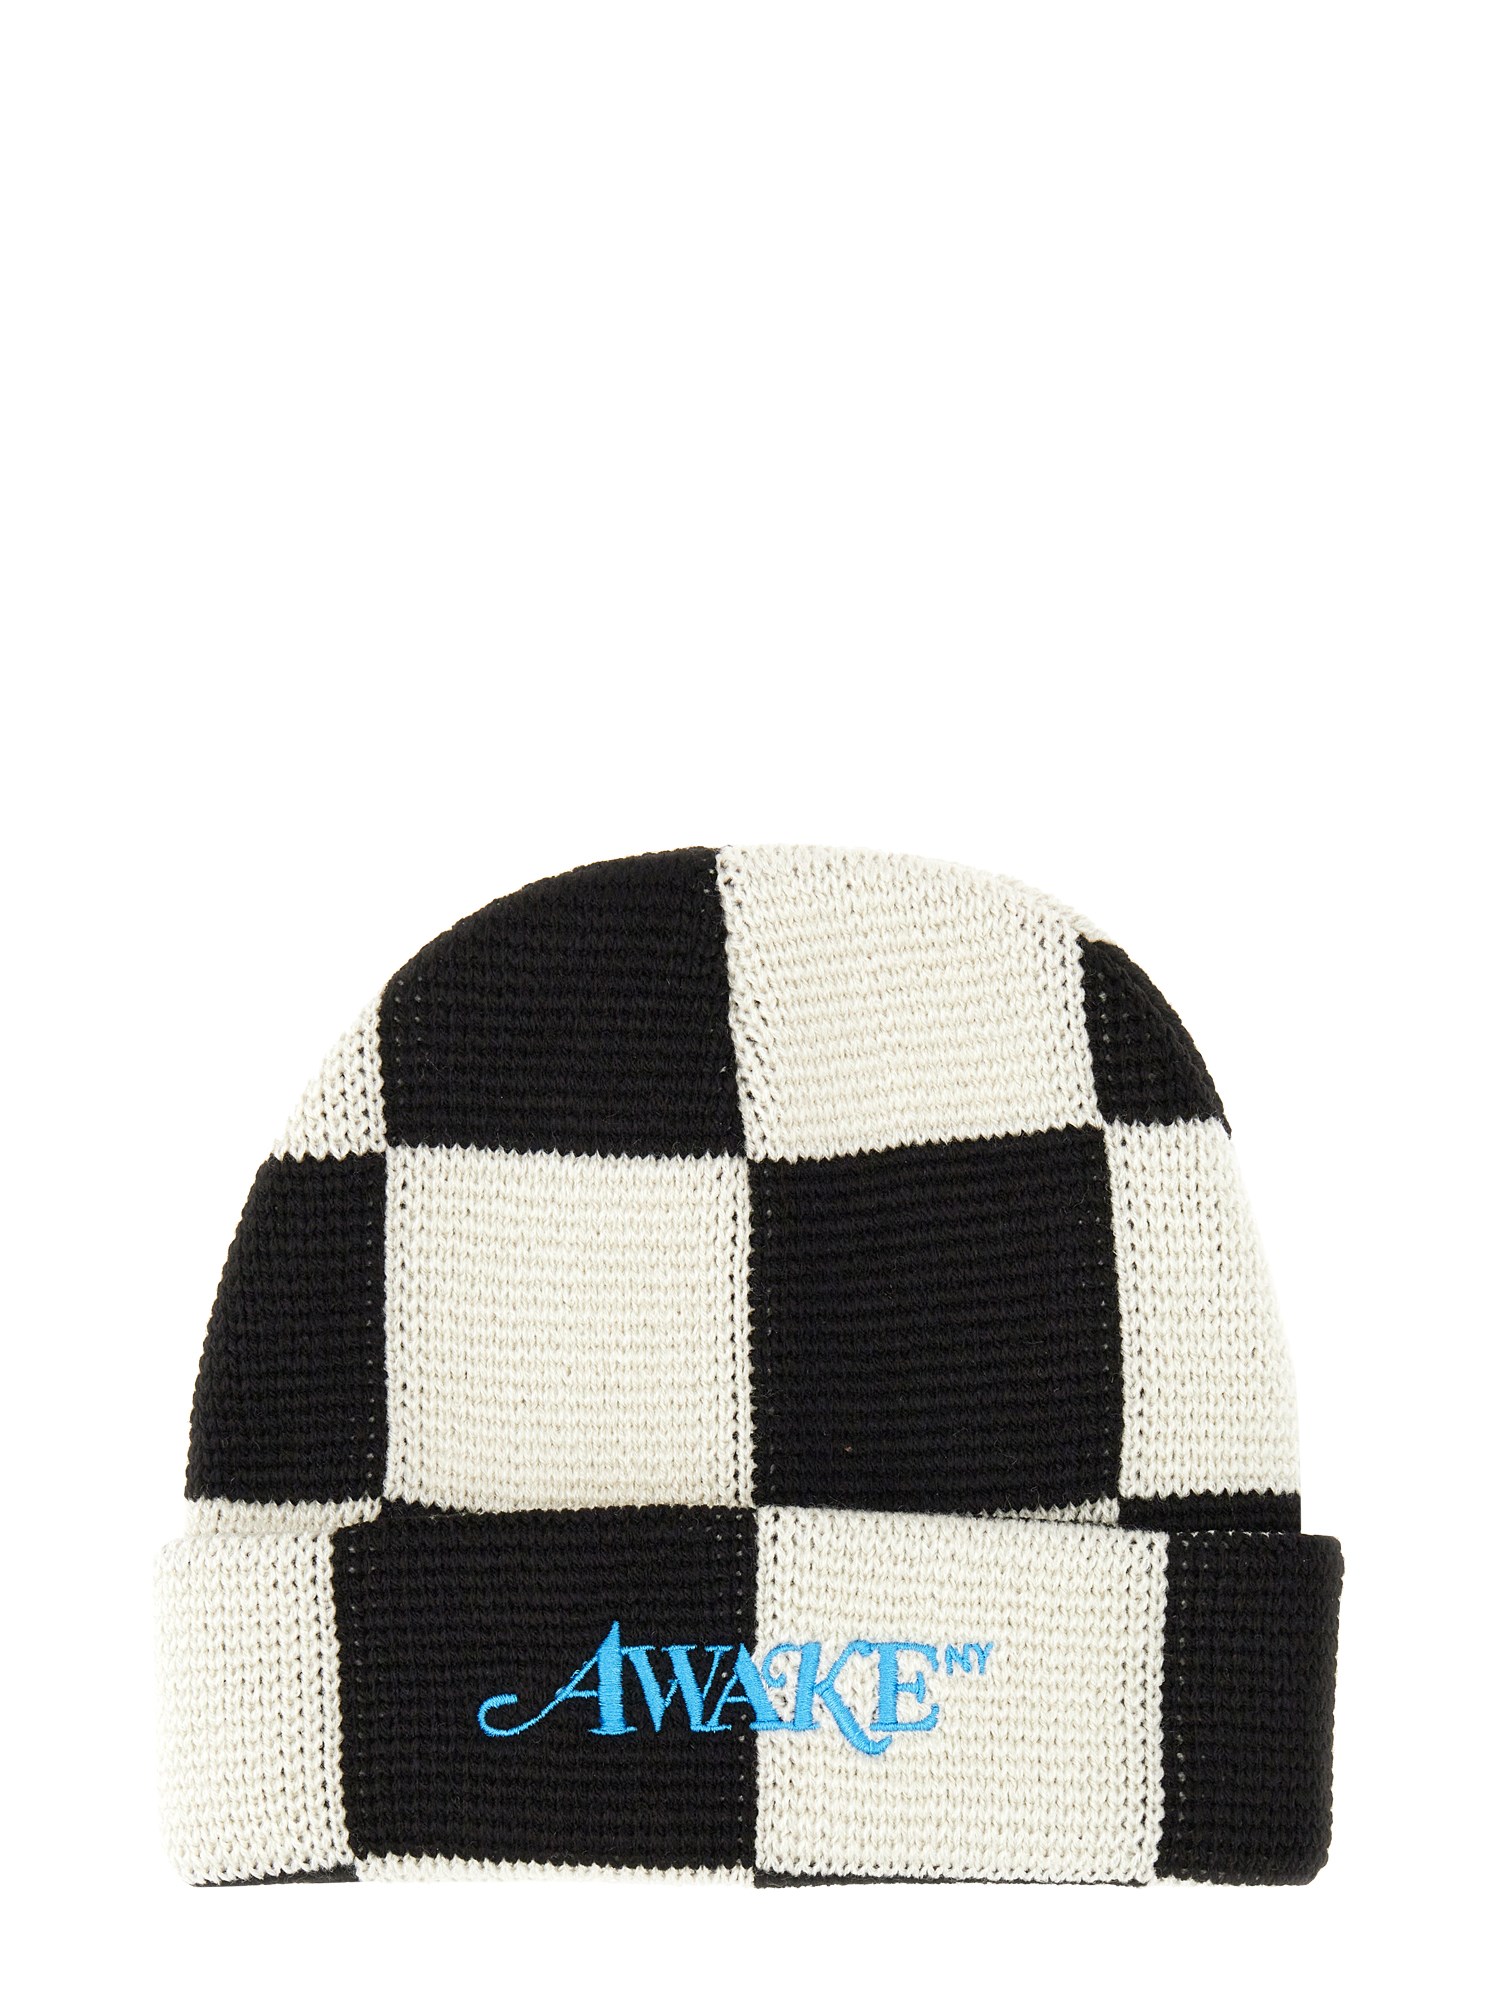 Awake Ny awake ny beanie hat with logo